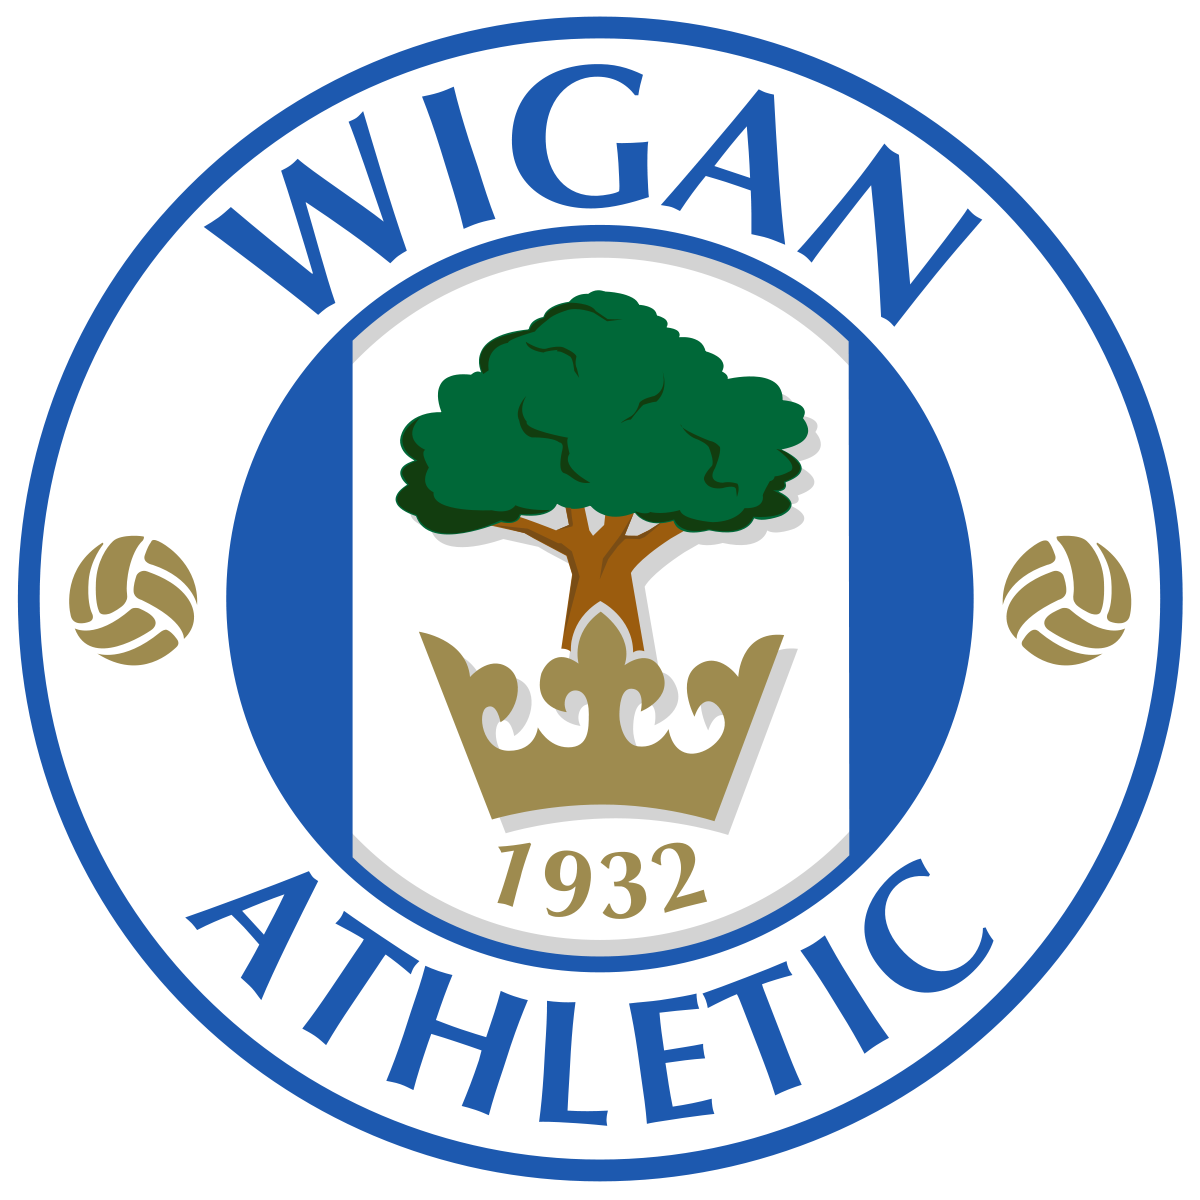 Logo du club de foot Wigan